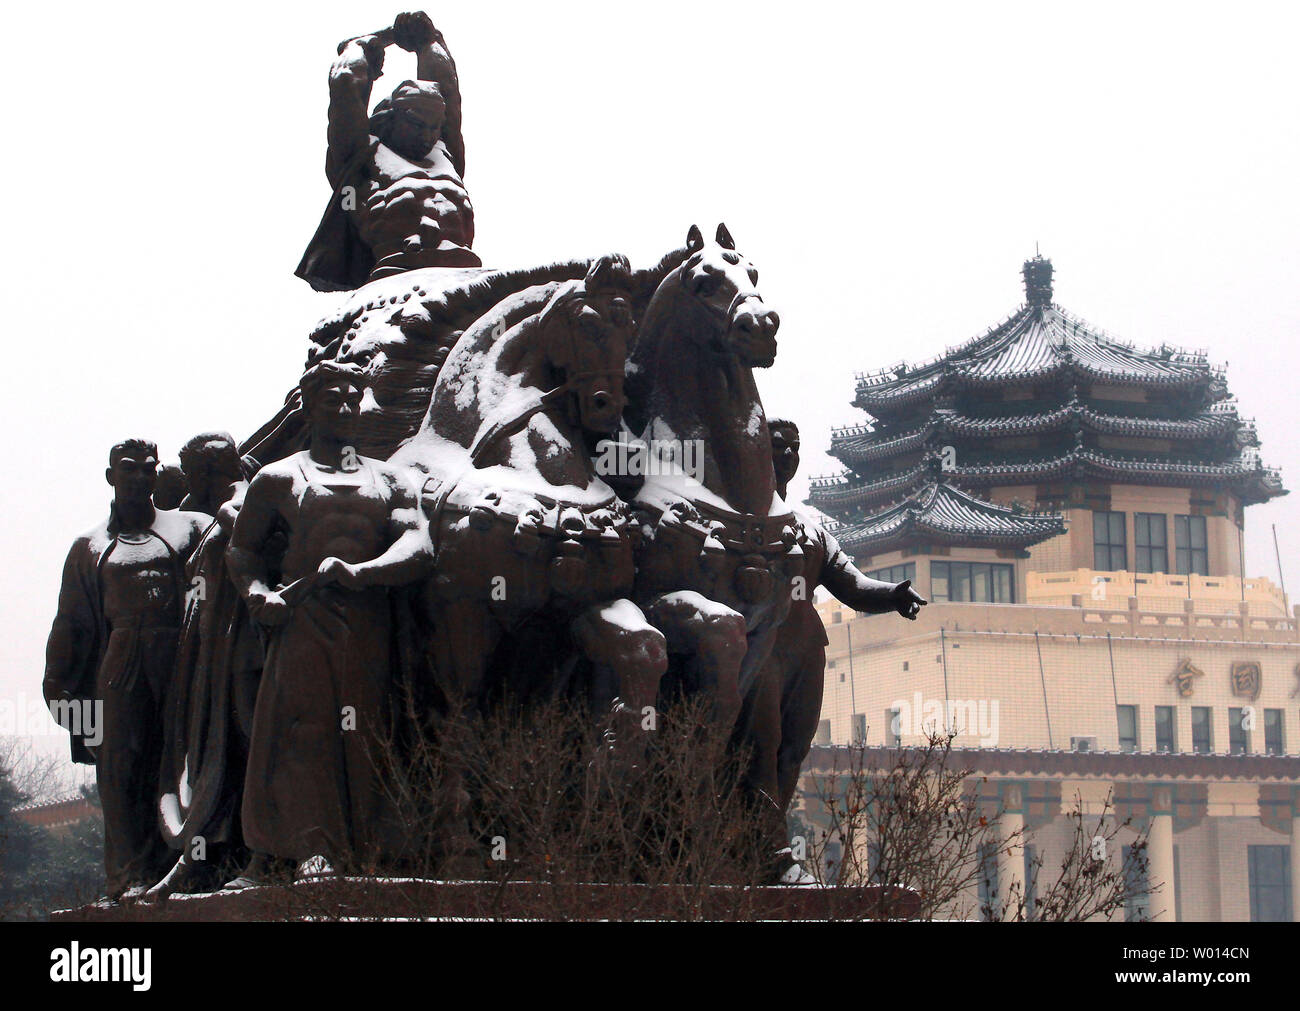 La neve copre una rivoluzione culturale statua nei pressi di un centro espositivo a Pechino il 7 febbraio 2014. È la prima neve per colpire la Cina del capitale in quanto l'inverno è iniziato lo scorso anno. UPI/Stephen rasoio Foto Stock